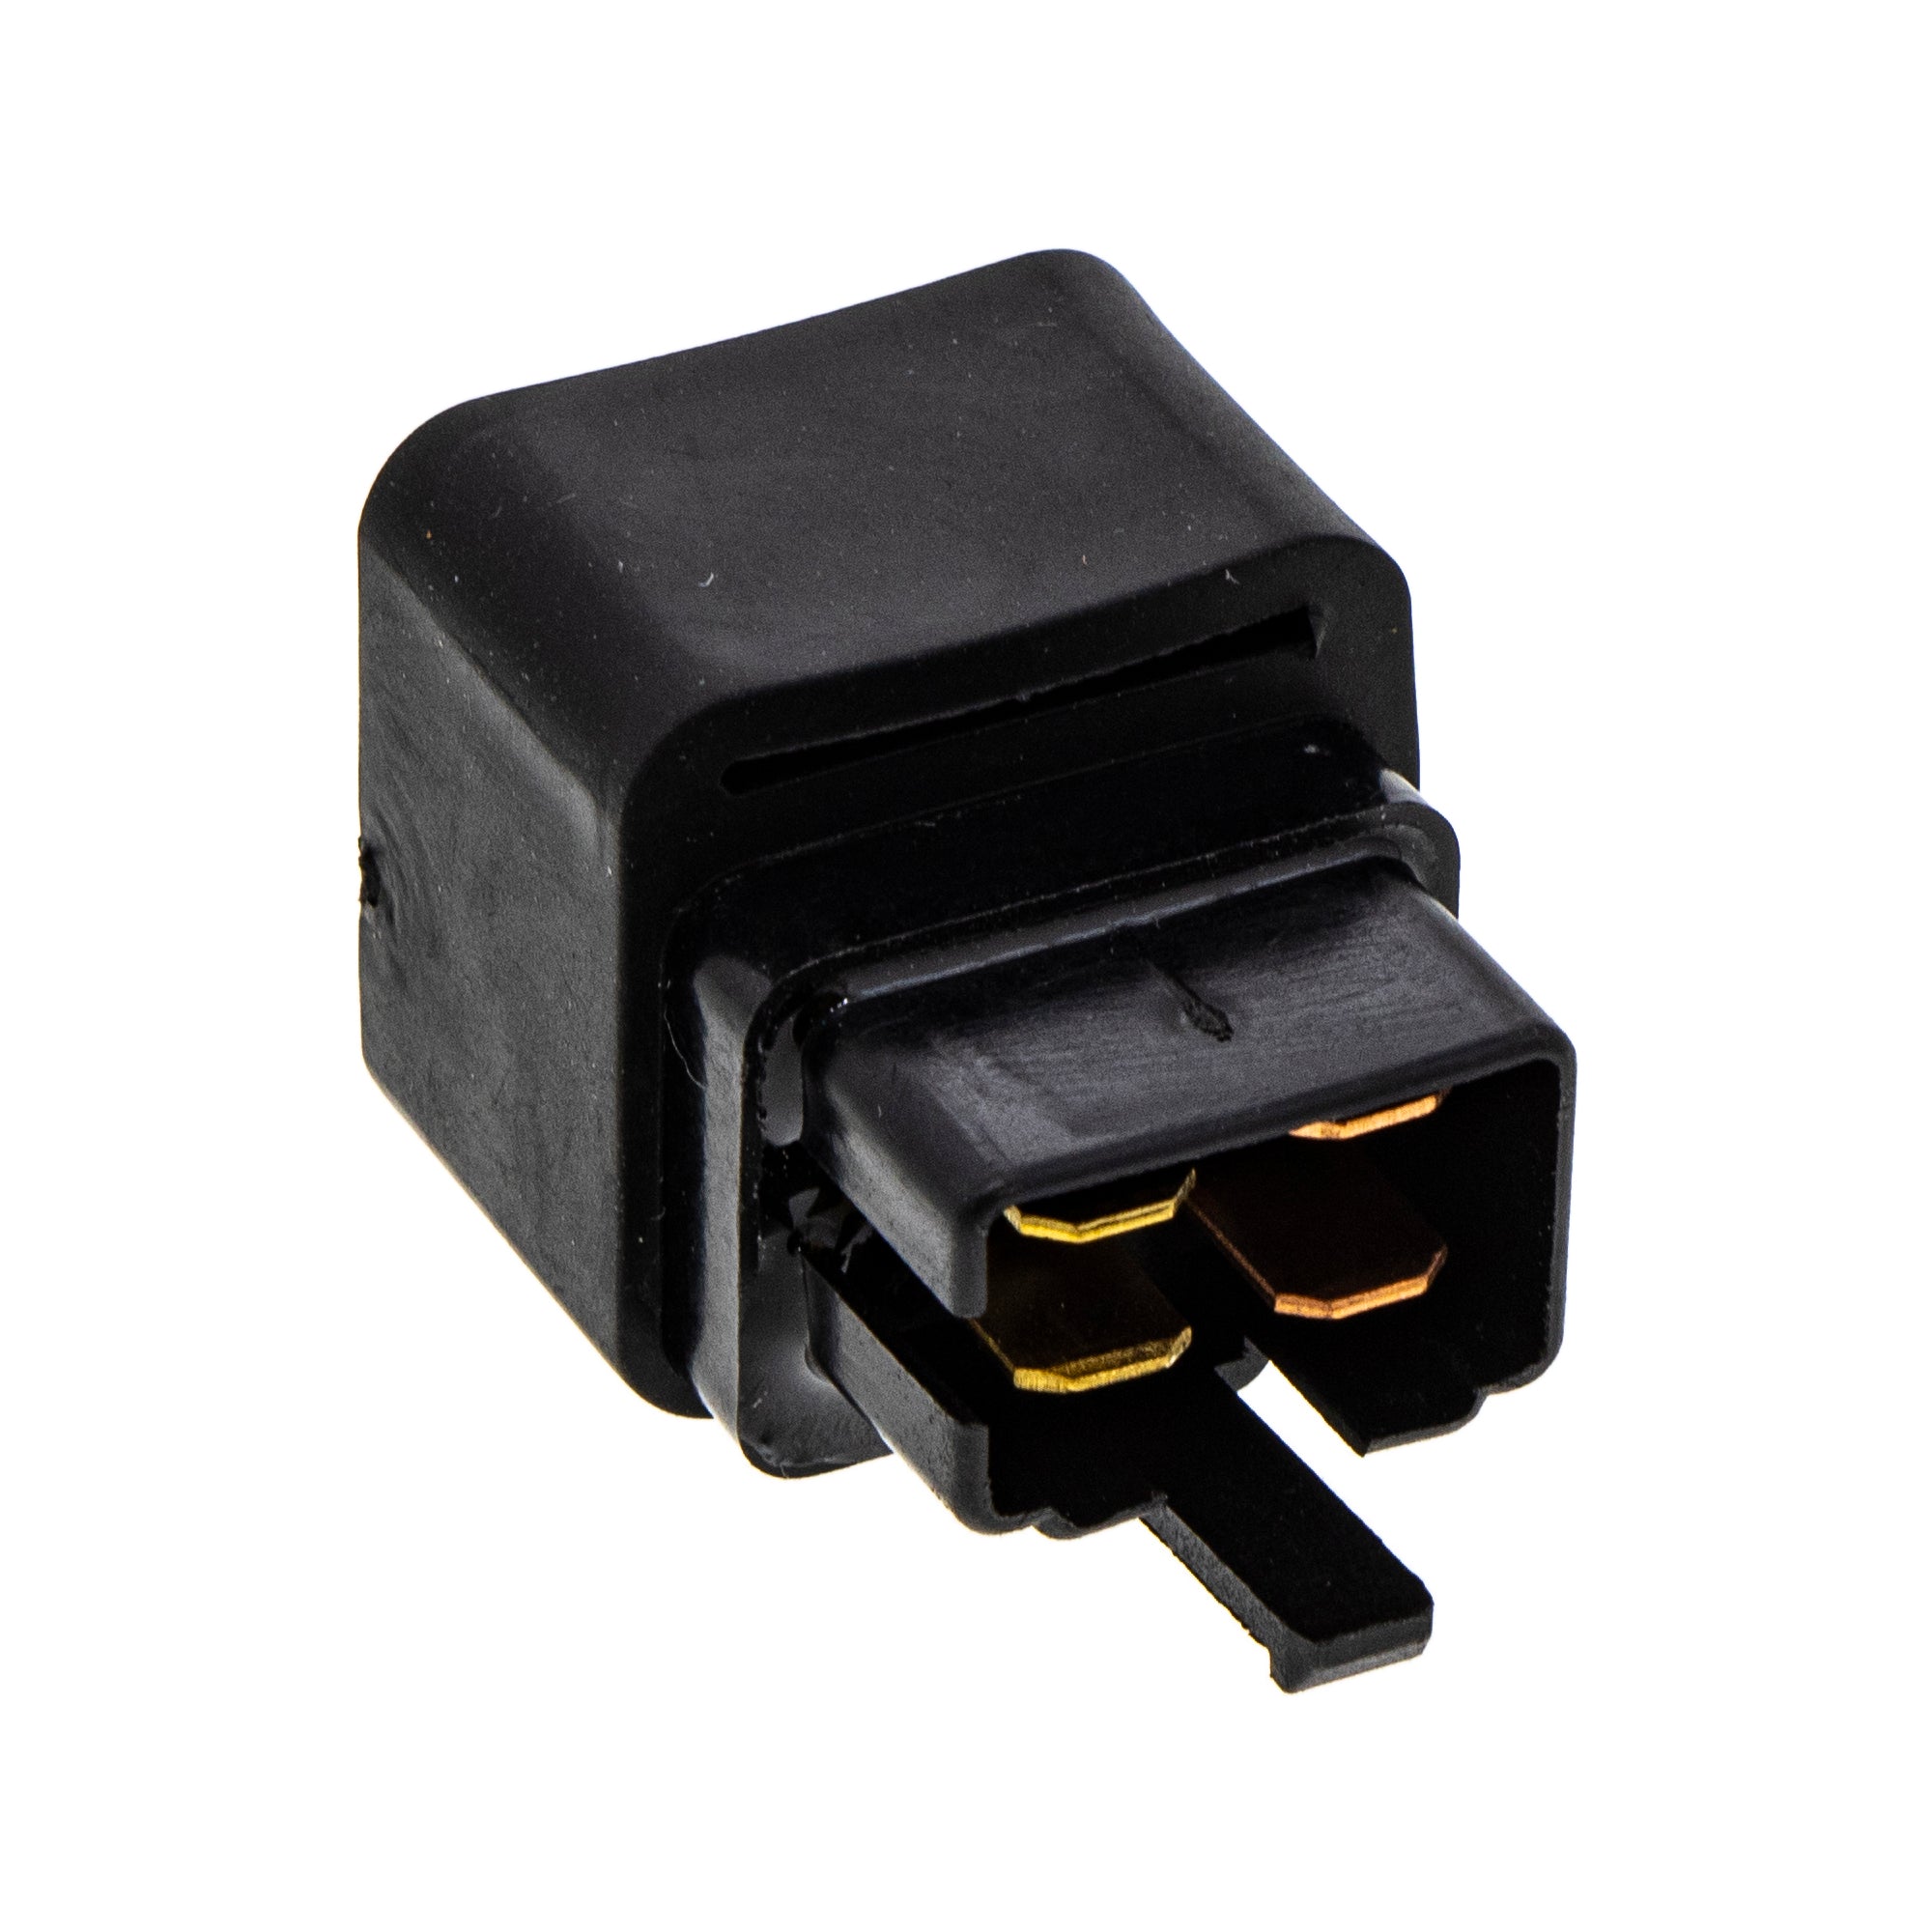 Starter Relay Switch for Artic Cat 3303-565 Utility DVX 50 ATV